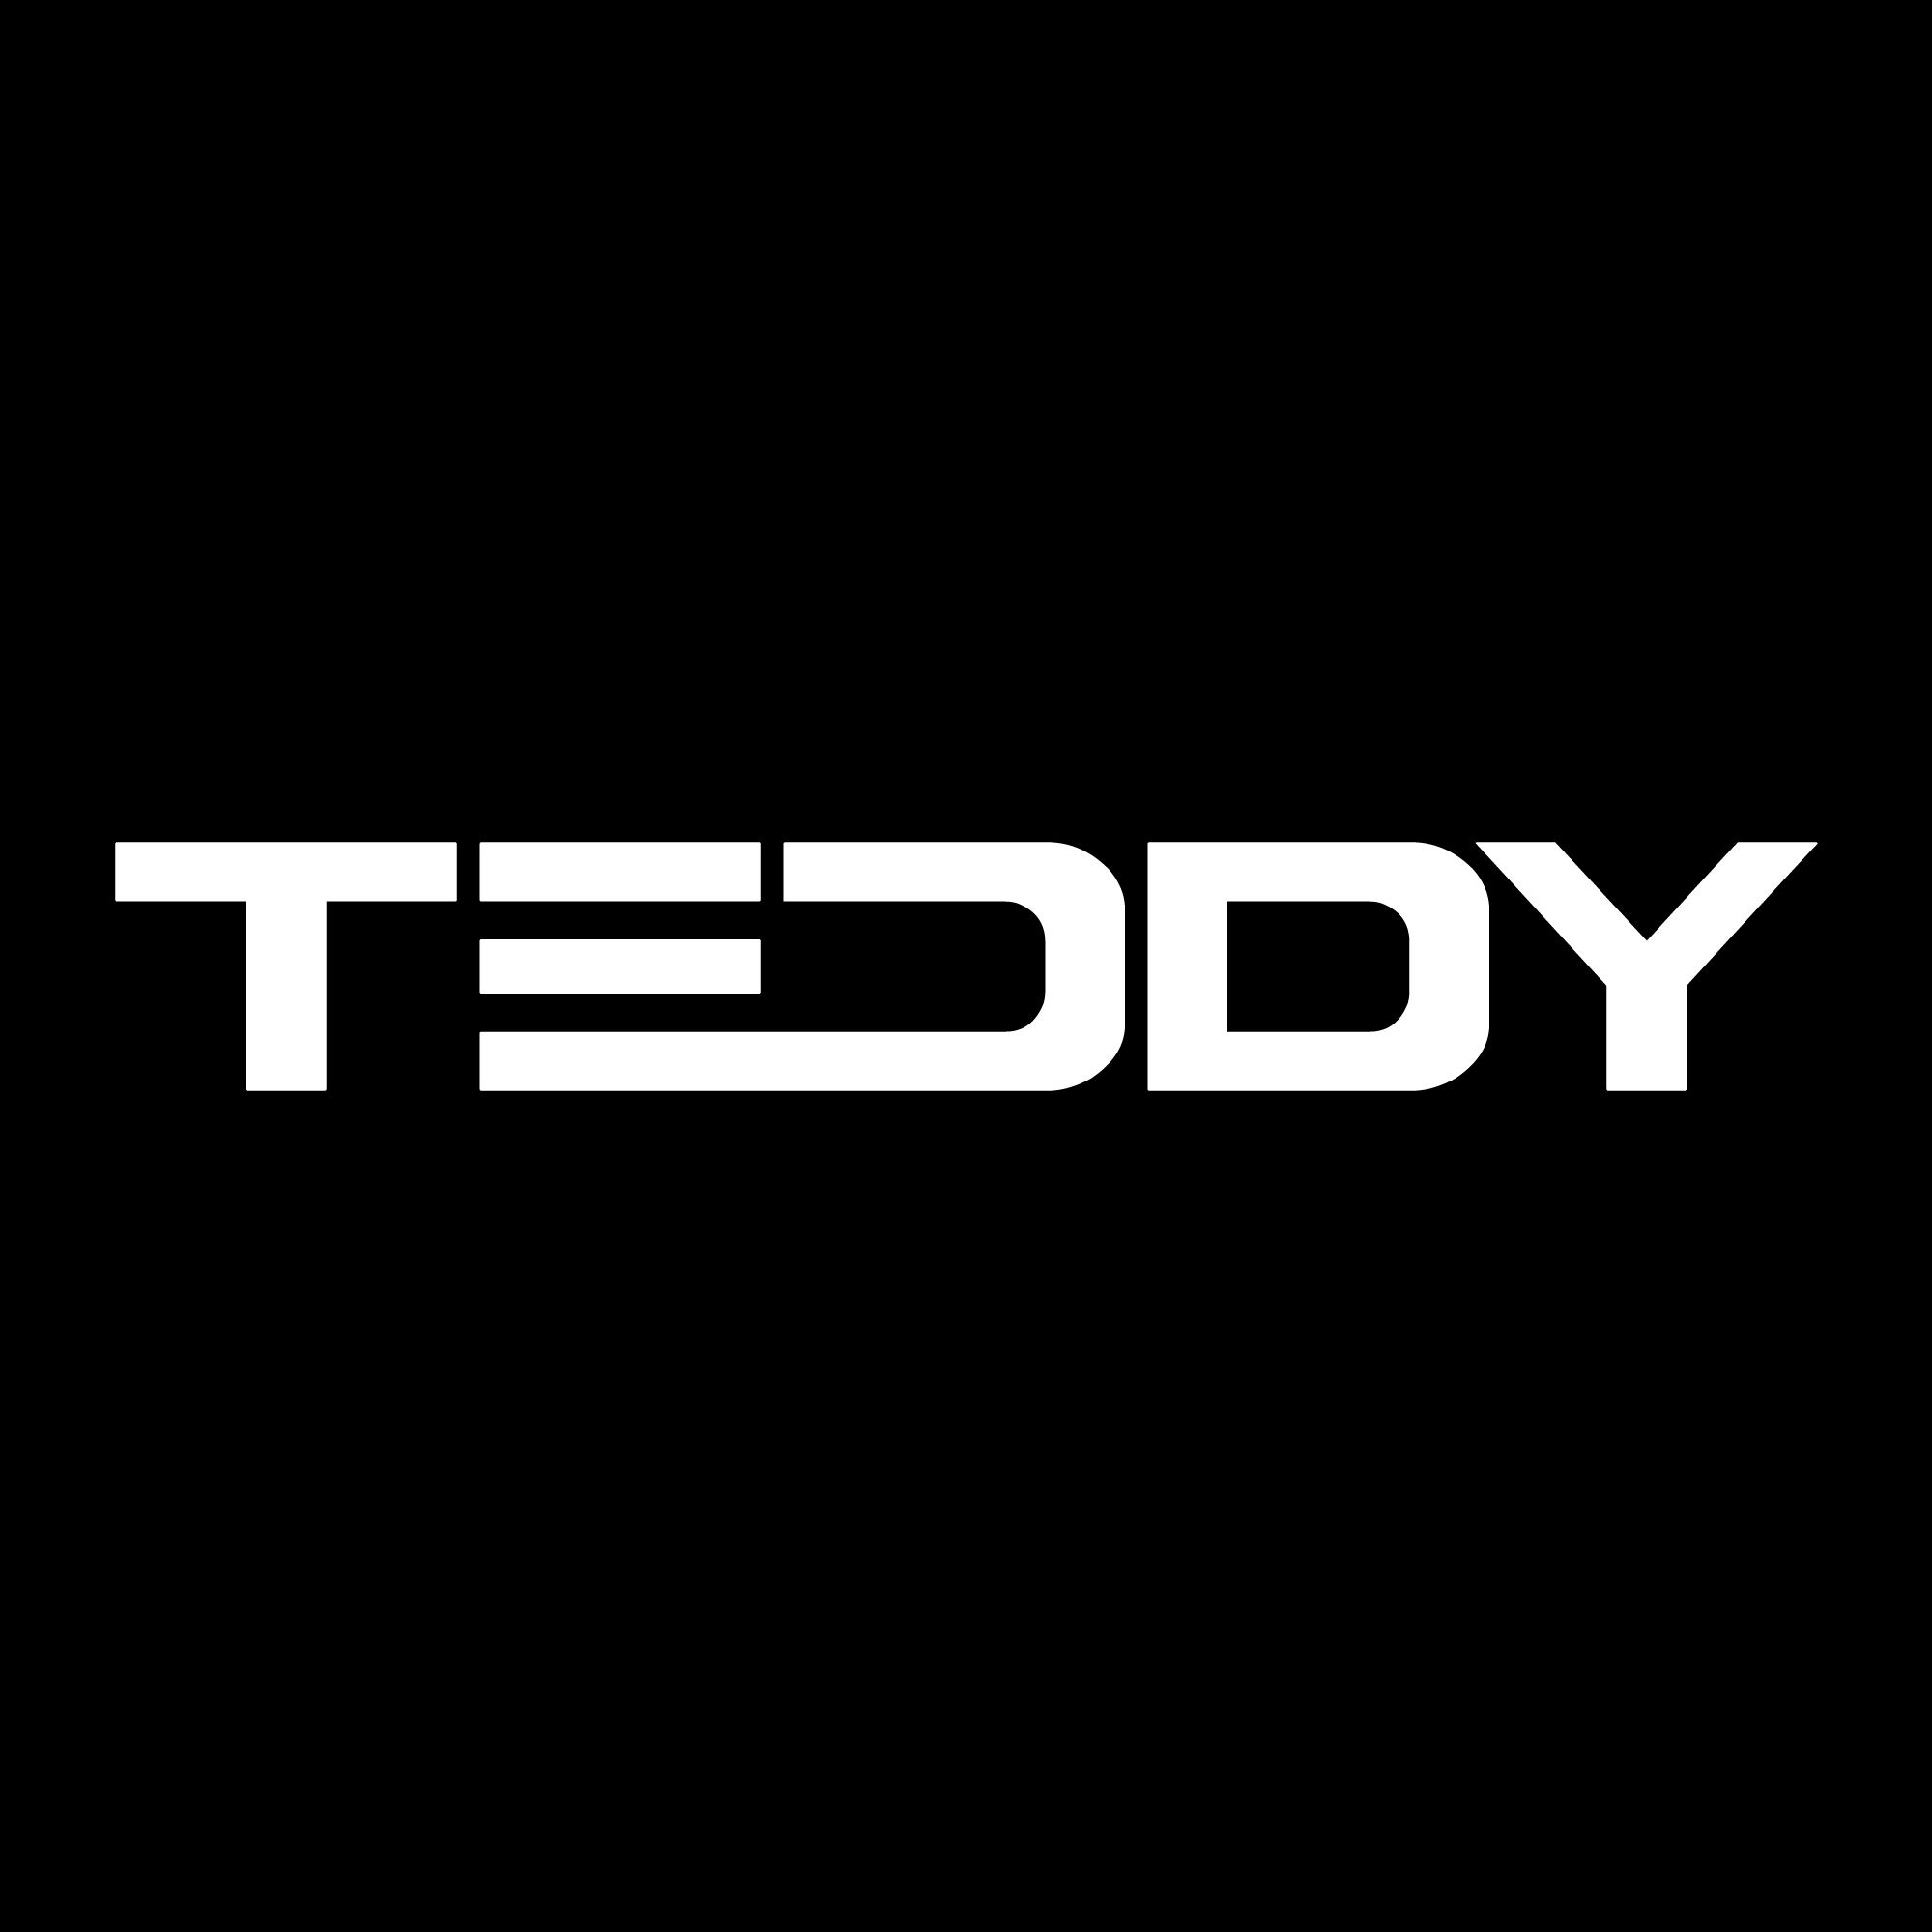 I-download XEM NHƯ EM CHẲNG MAY - TEDDY x GUANG REMIX